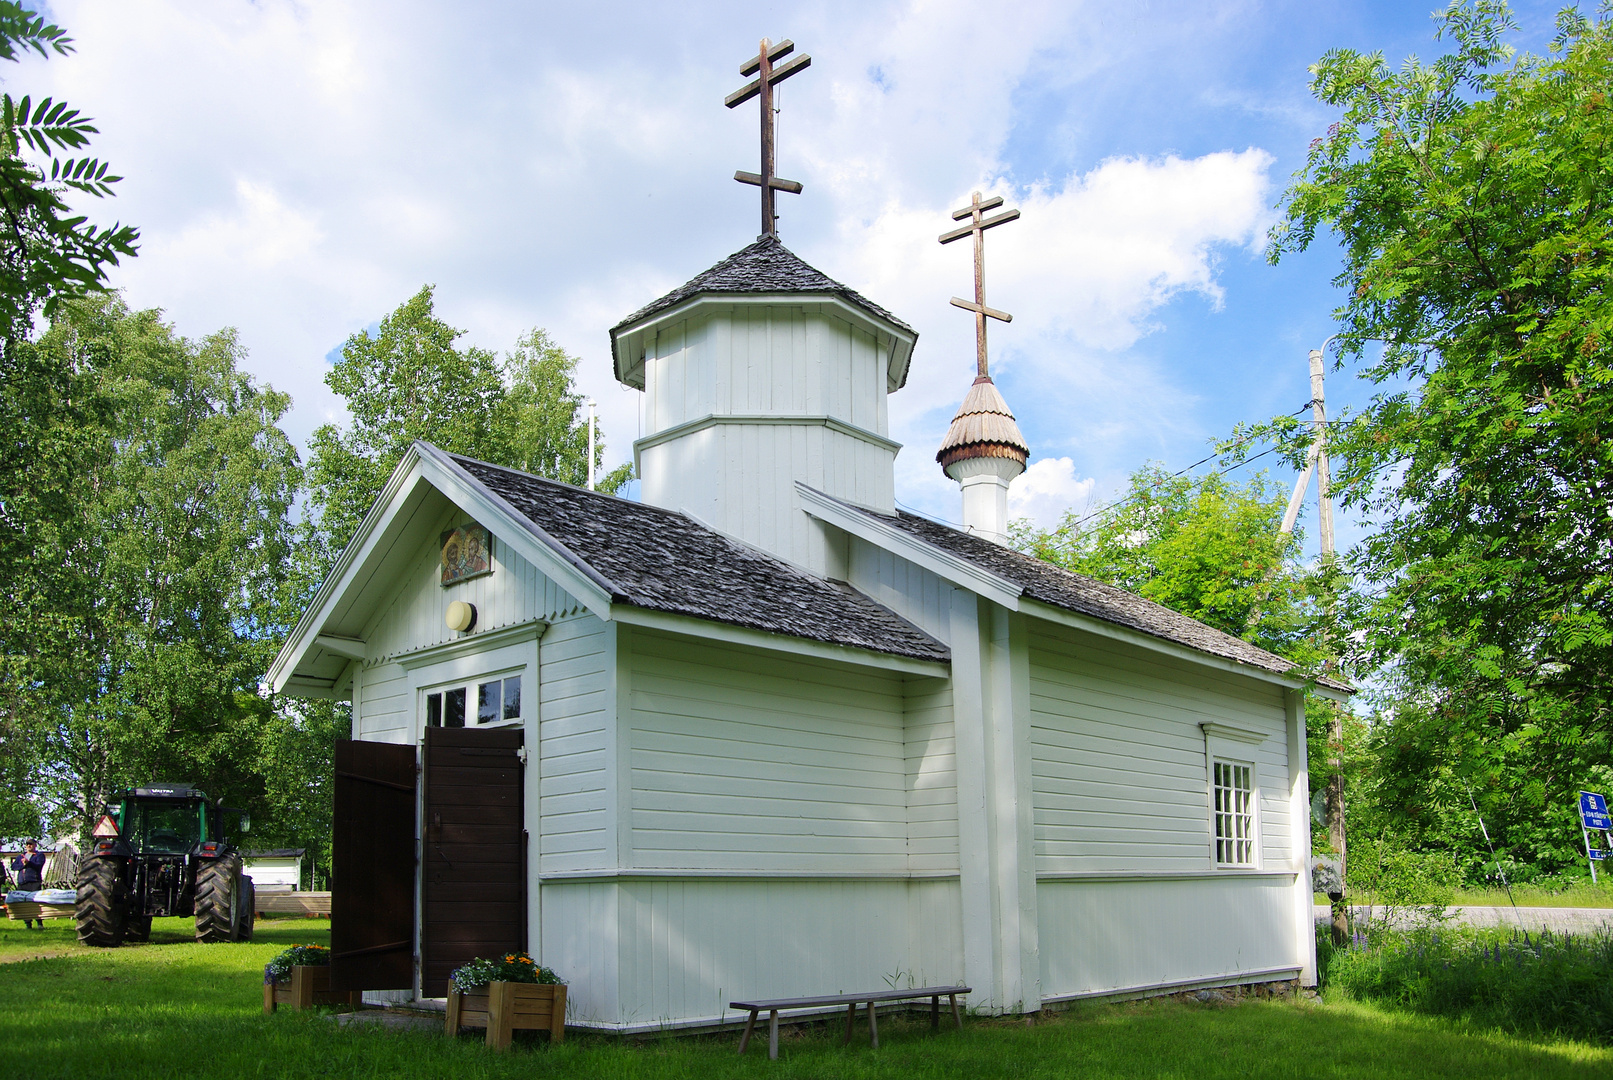 kleinste Orthodoxe Kirche in Finnland